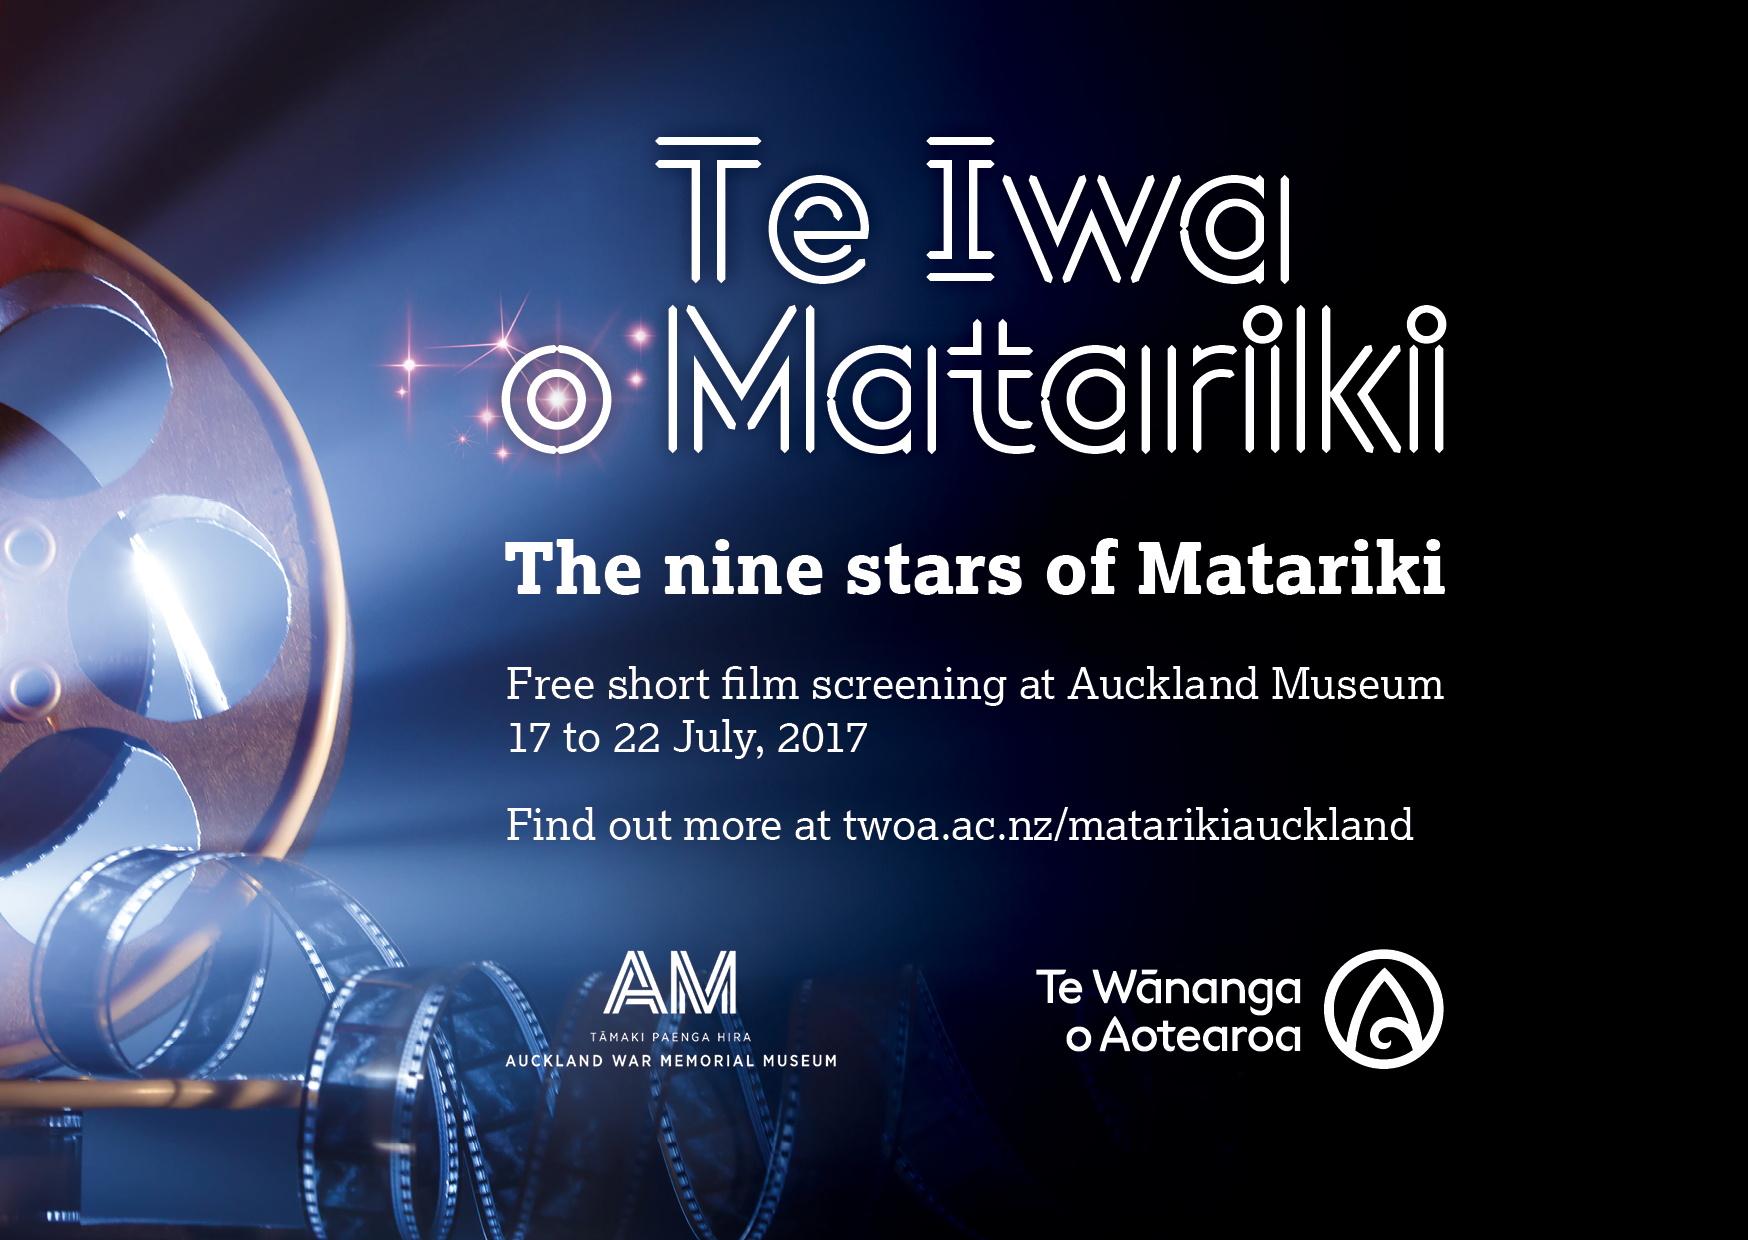 Te Iwa o Matariki screening